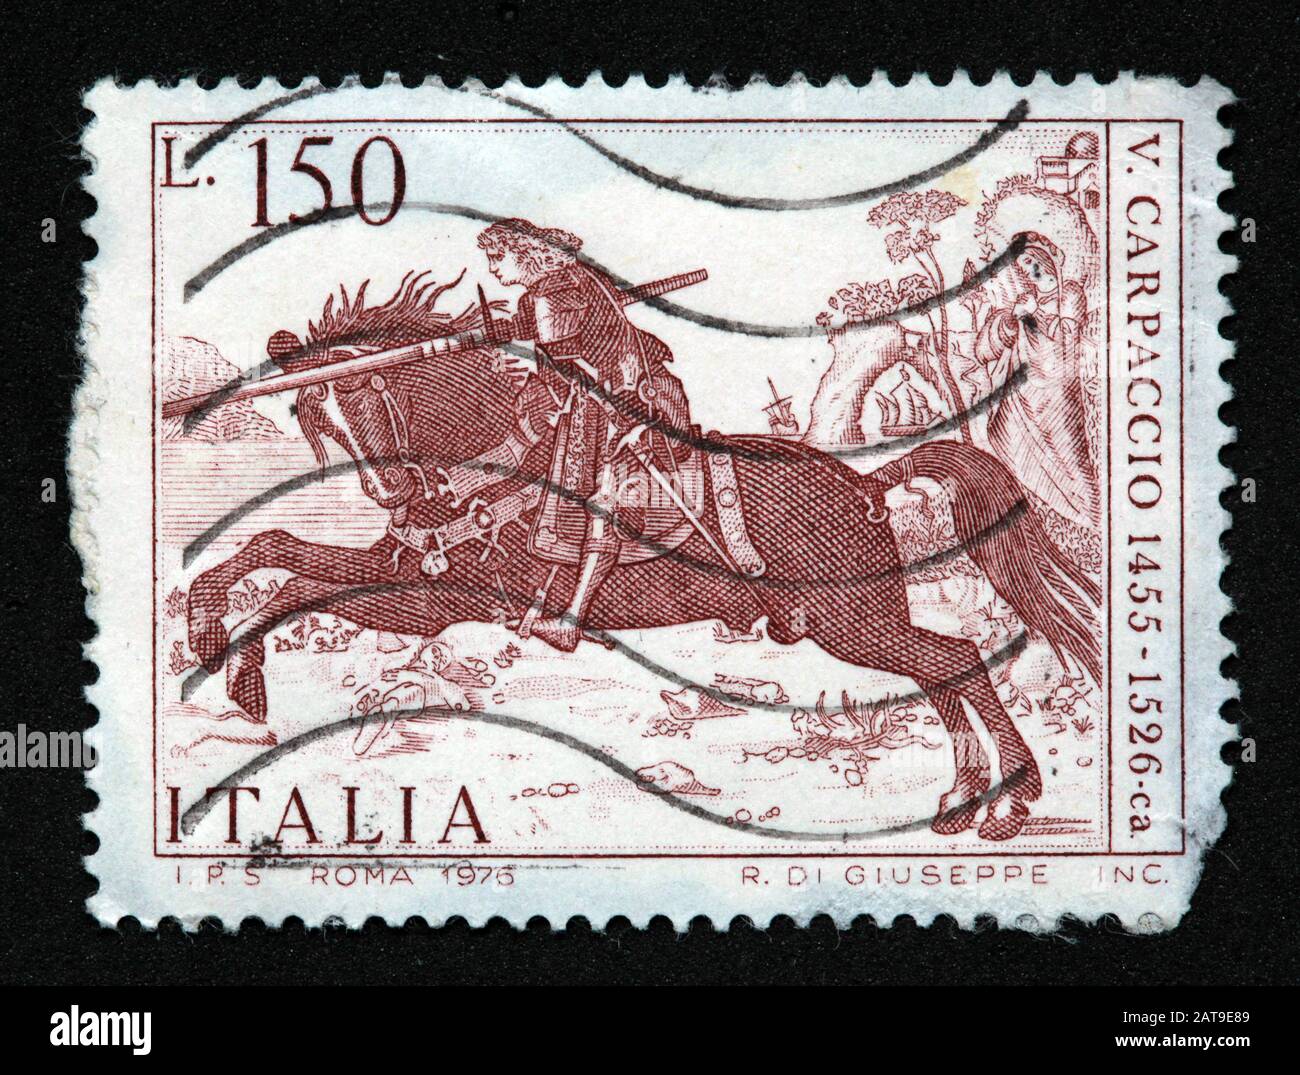 Francobollo italiano, poste Italia usato e affrancato, Roma, 1976 R.di.Giuseppe Inc, 150lire, 150L, V.Carpaccio, 1455-1526 Carpaccio Foto Stock